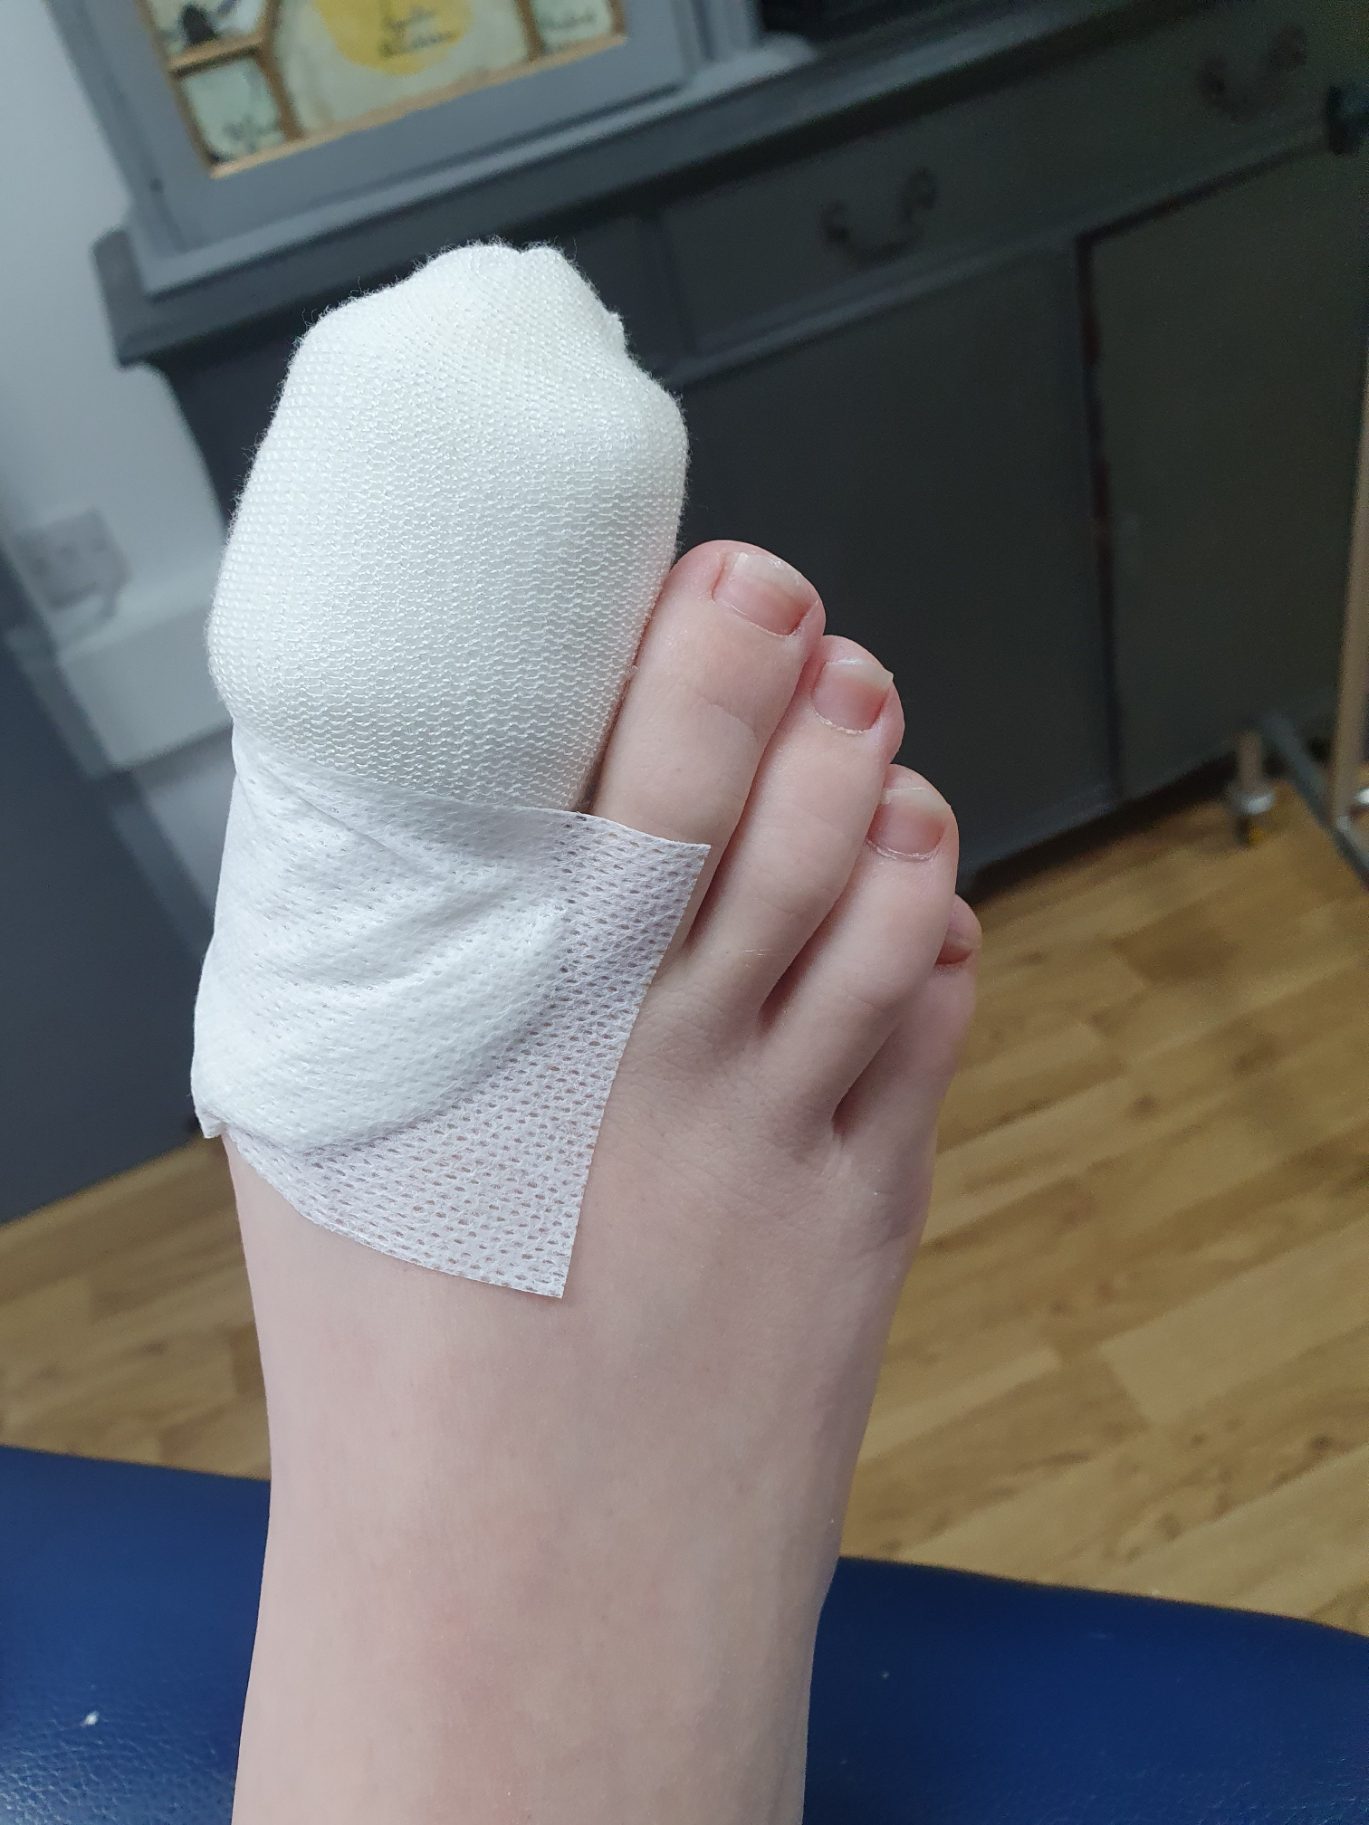 Bandaged toe after nail surgery